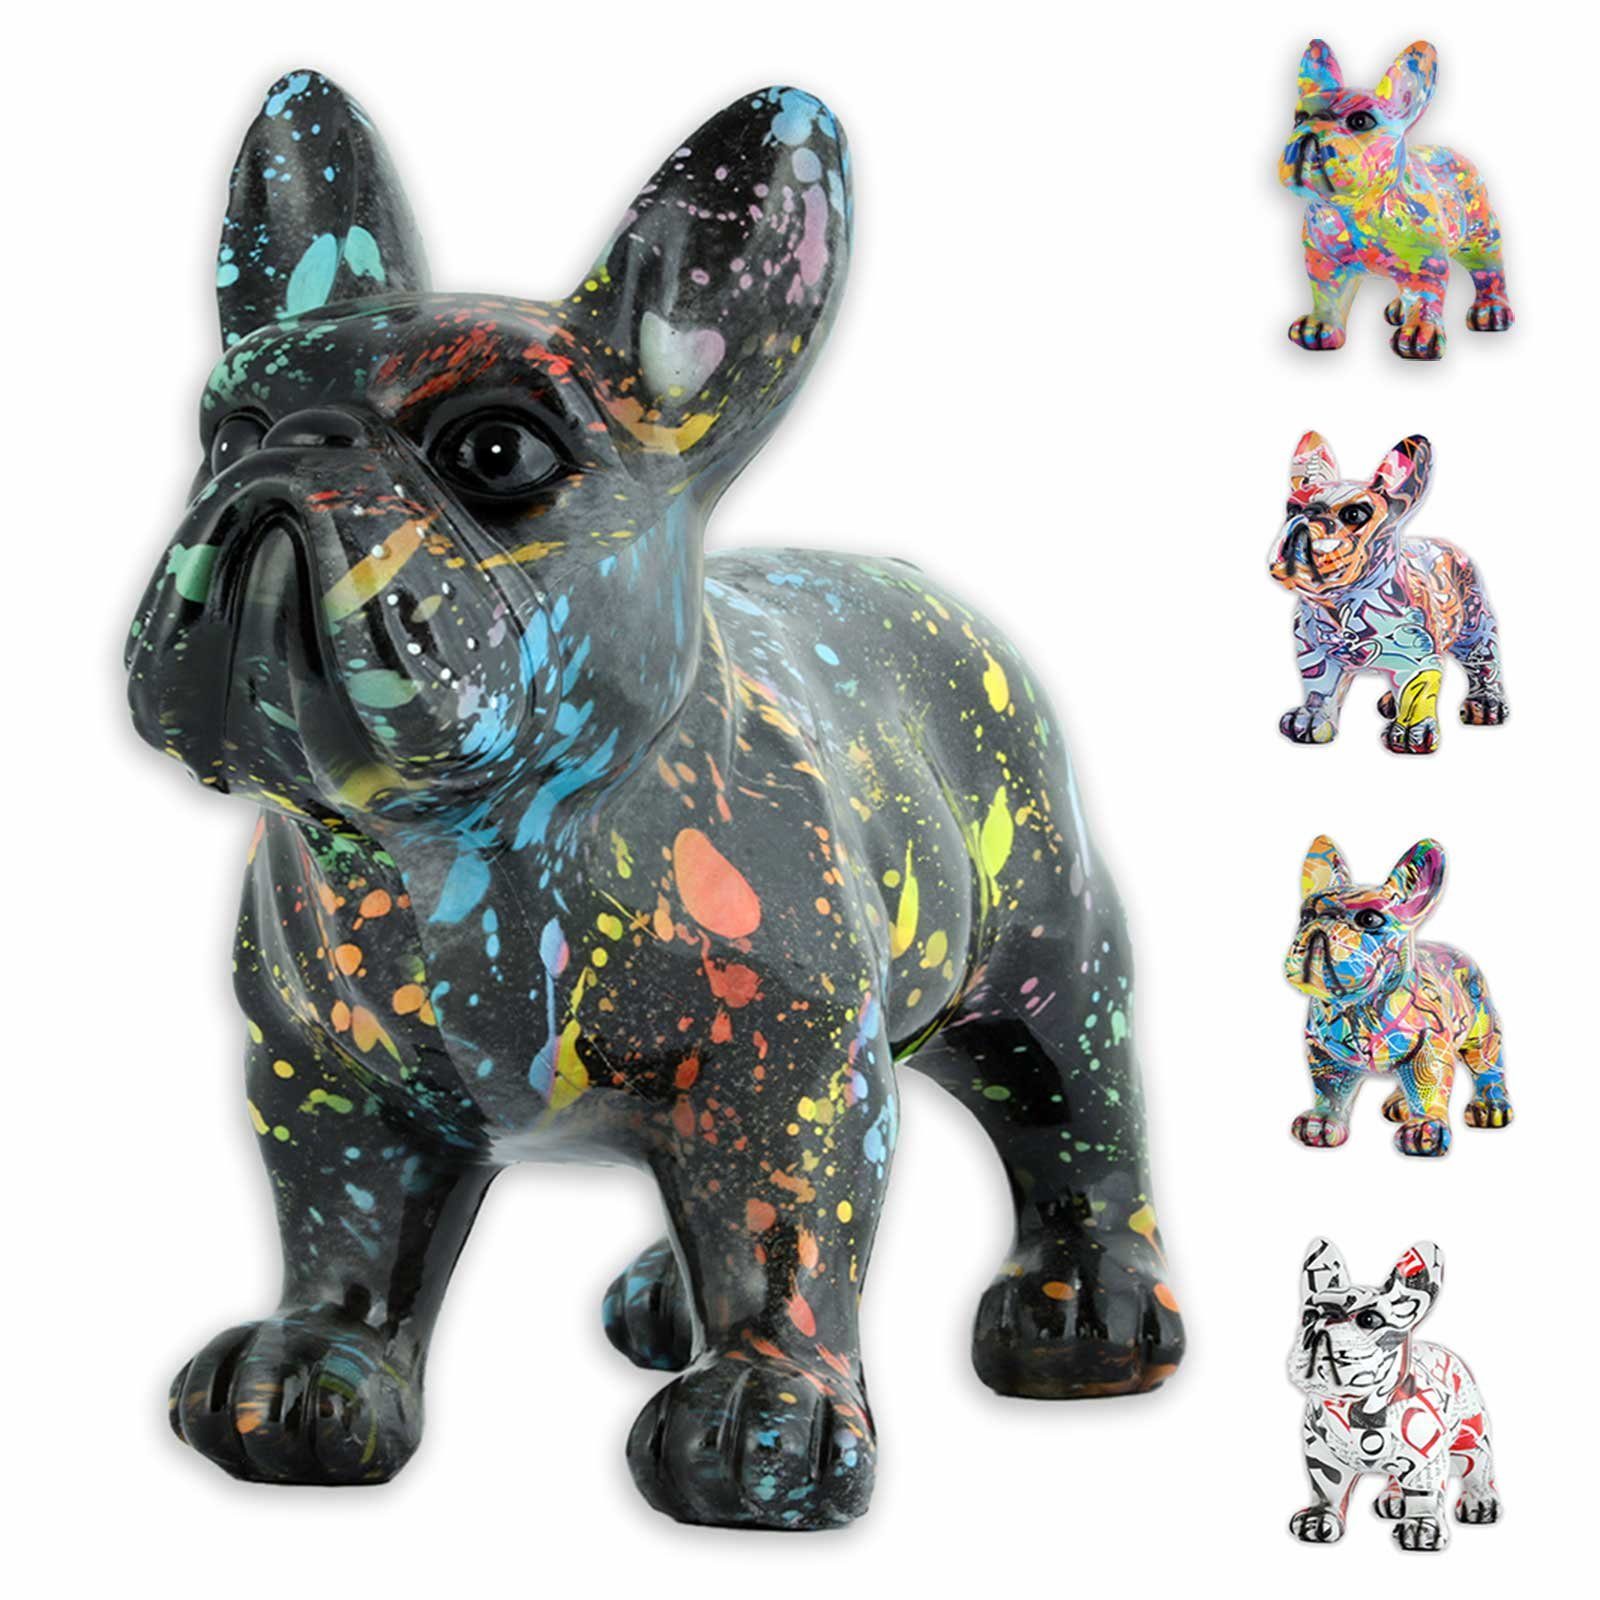 Figur Wohnzimmer Dekoration - Bulldogge Figuren (Packung) Französische Tier Deko Monkimau Tierfigur